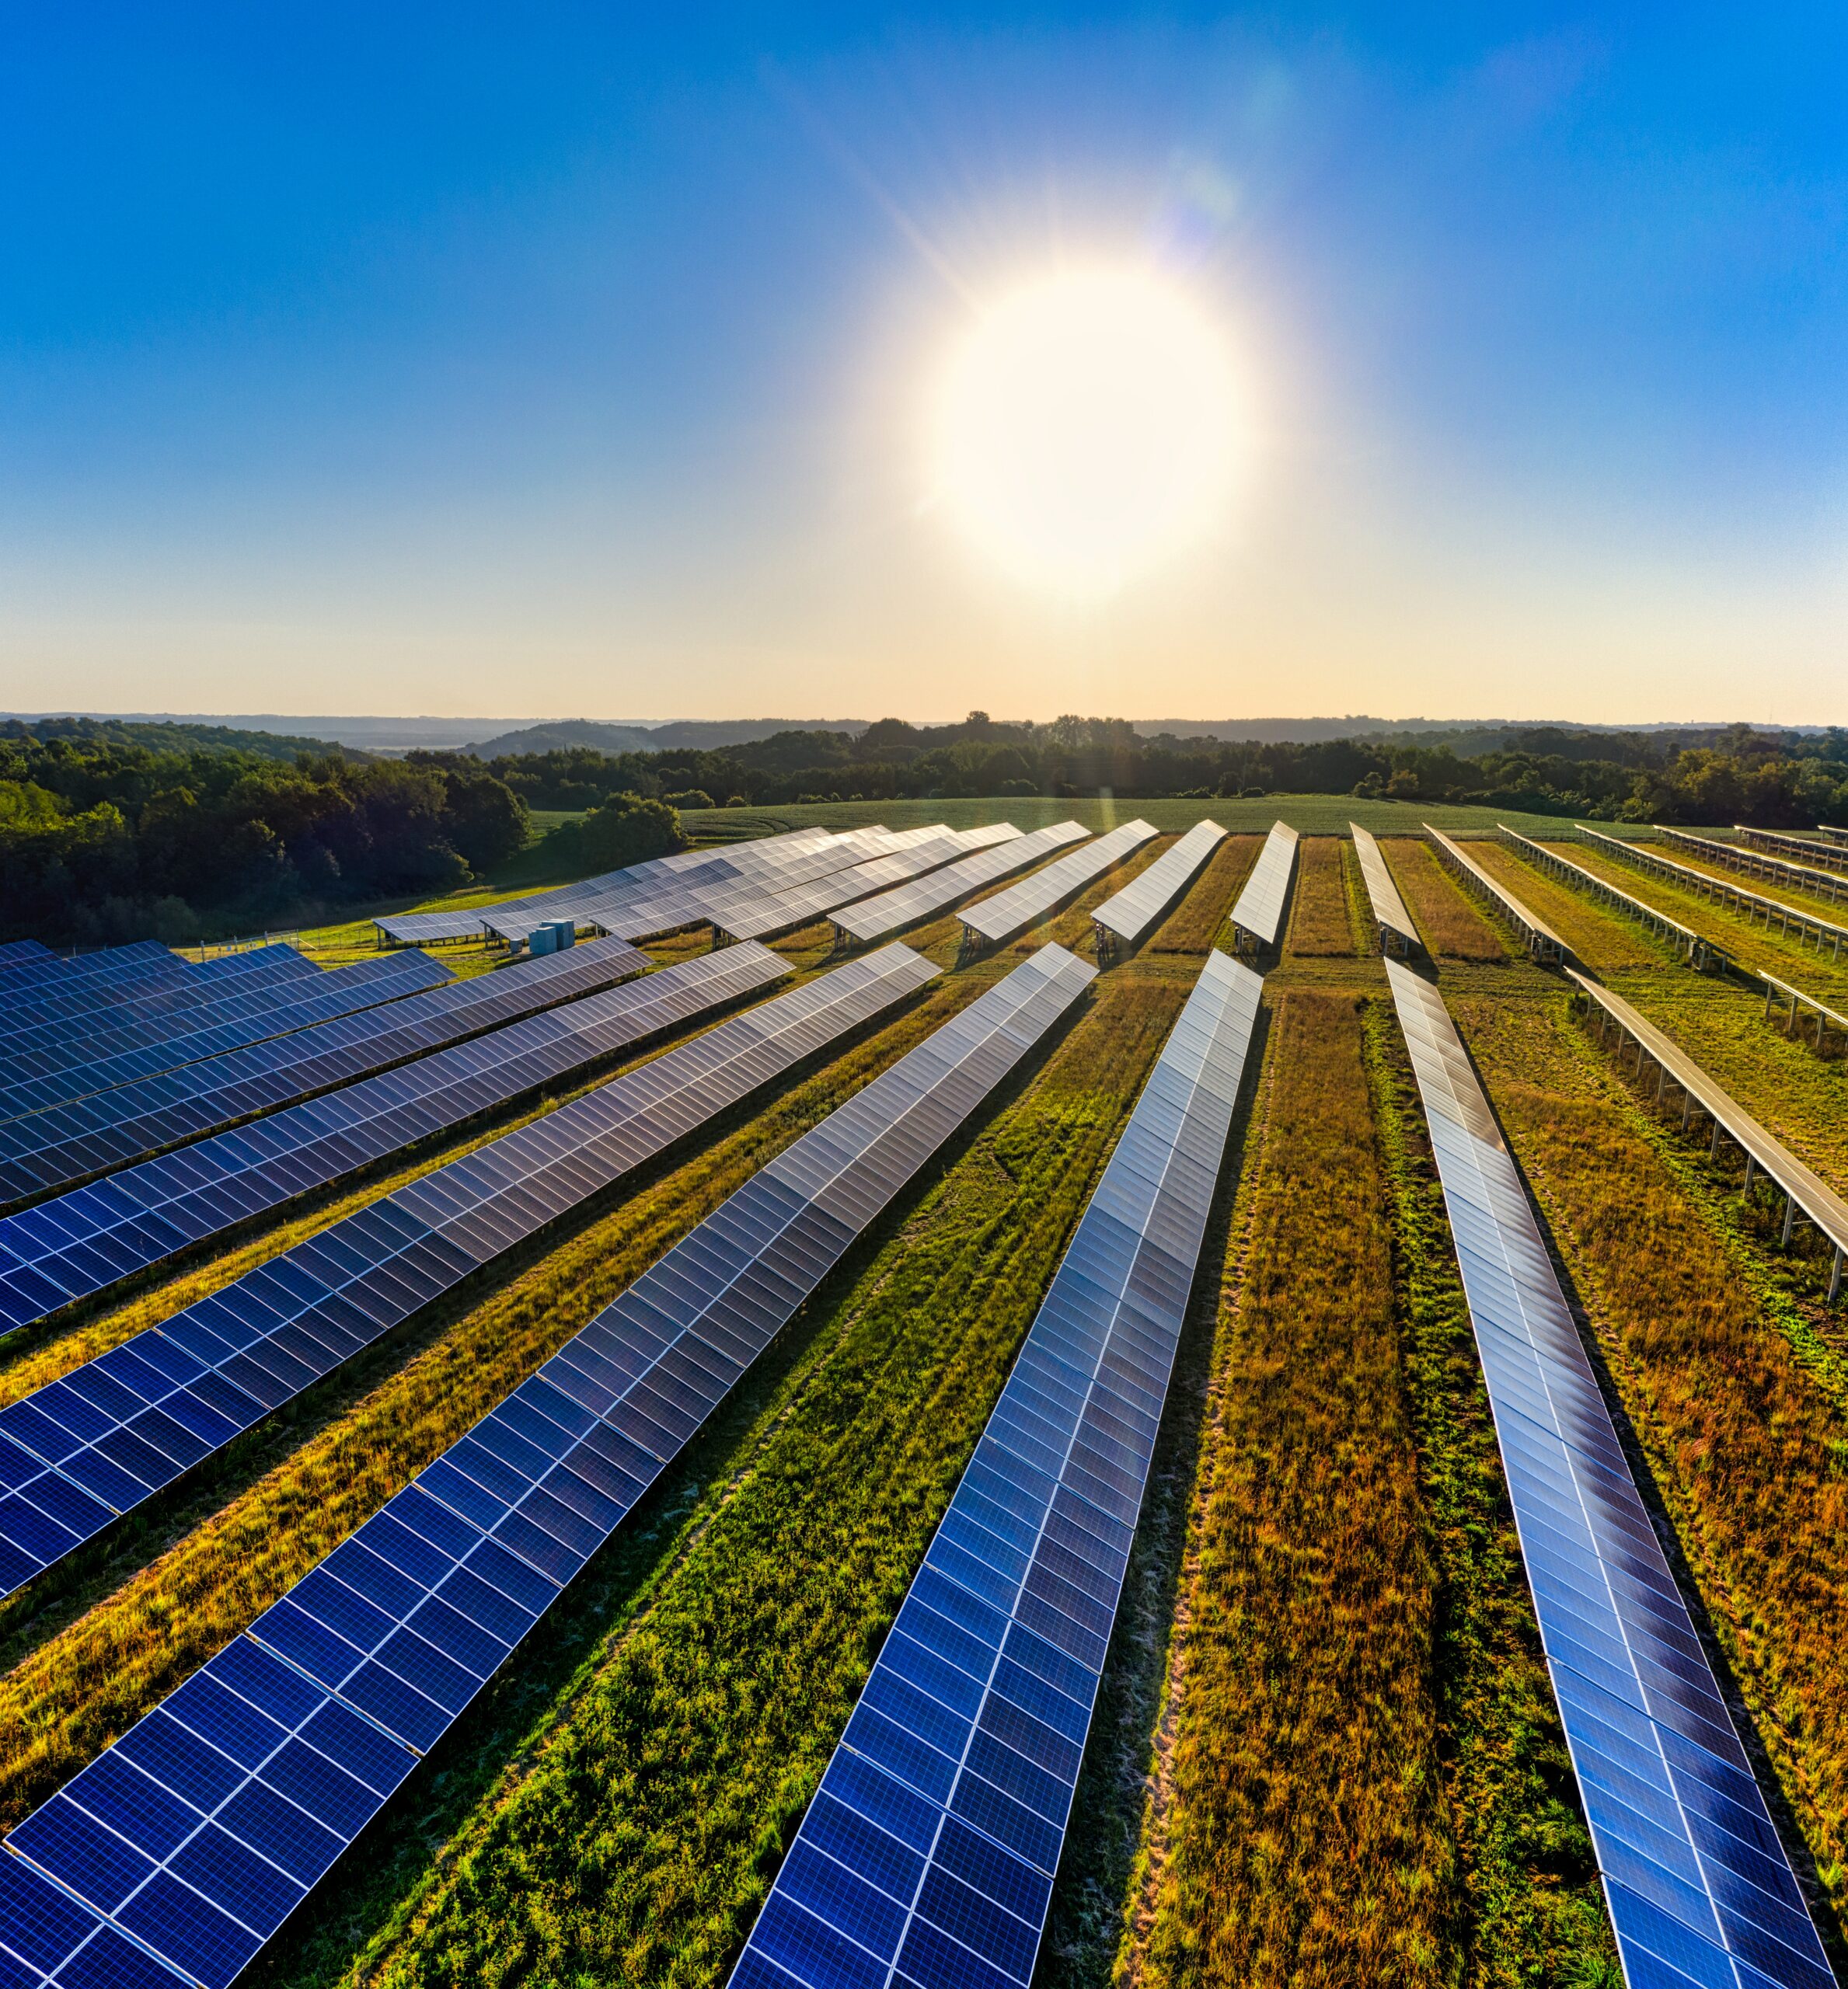 Governo zera impostos federais para painéis solares até 2026